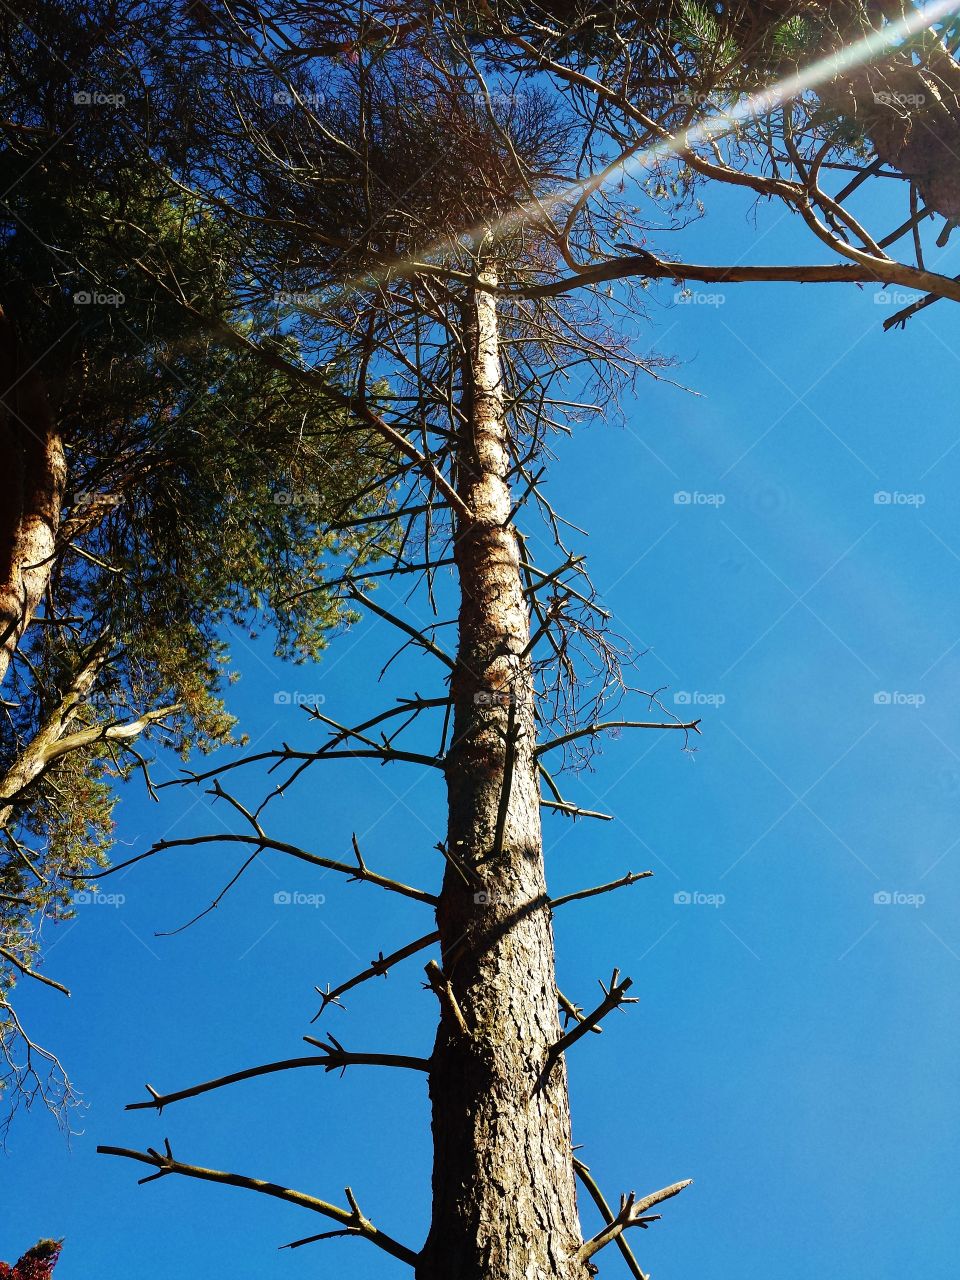 sun streaked tree